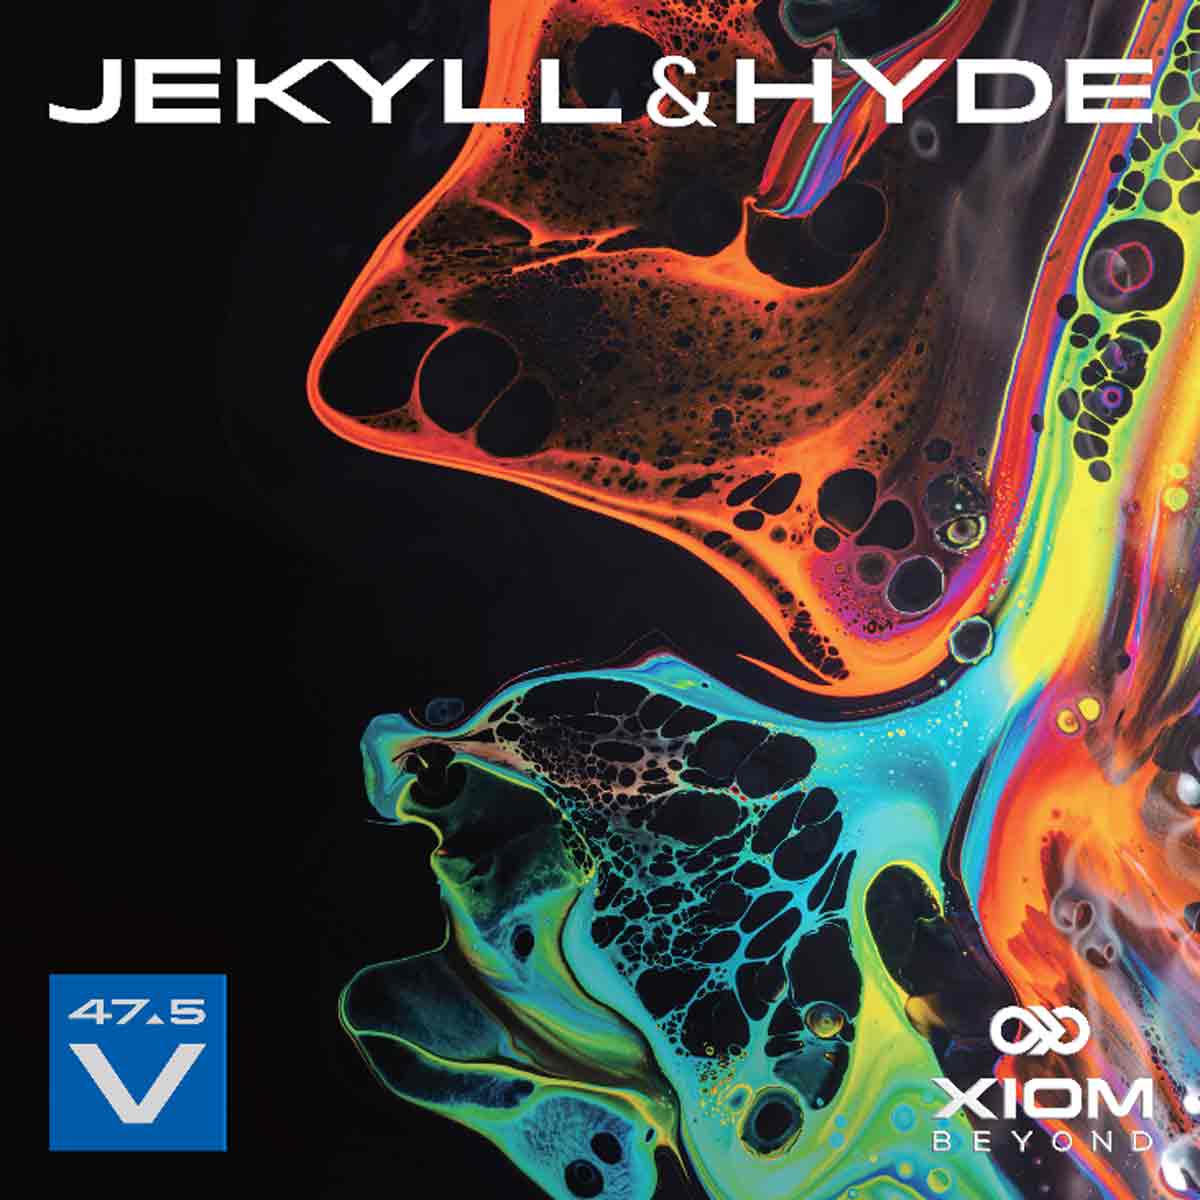 Xiom Belag Jekyll & Hyde V47.5 rot 2,1 mm